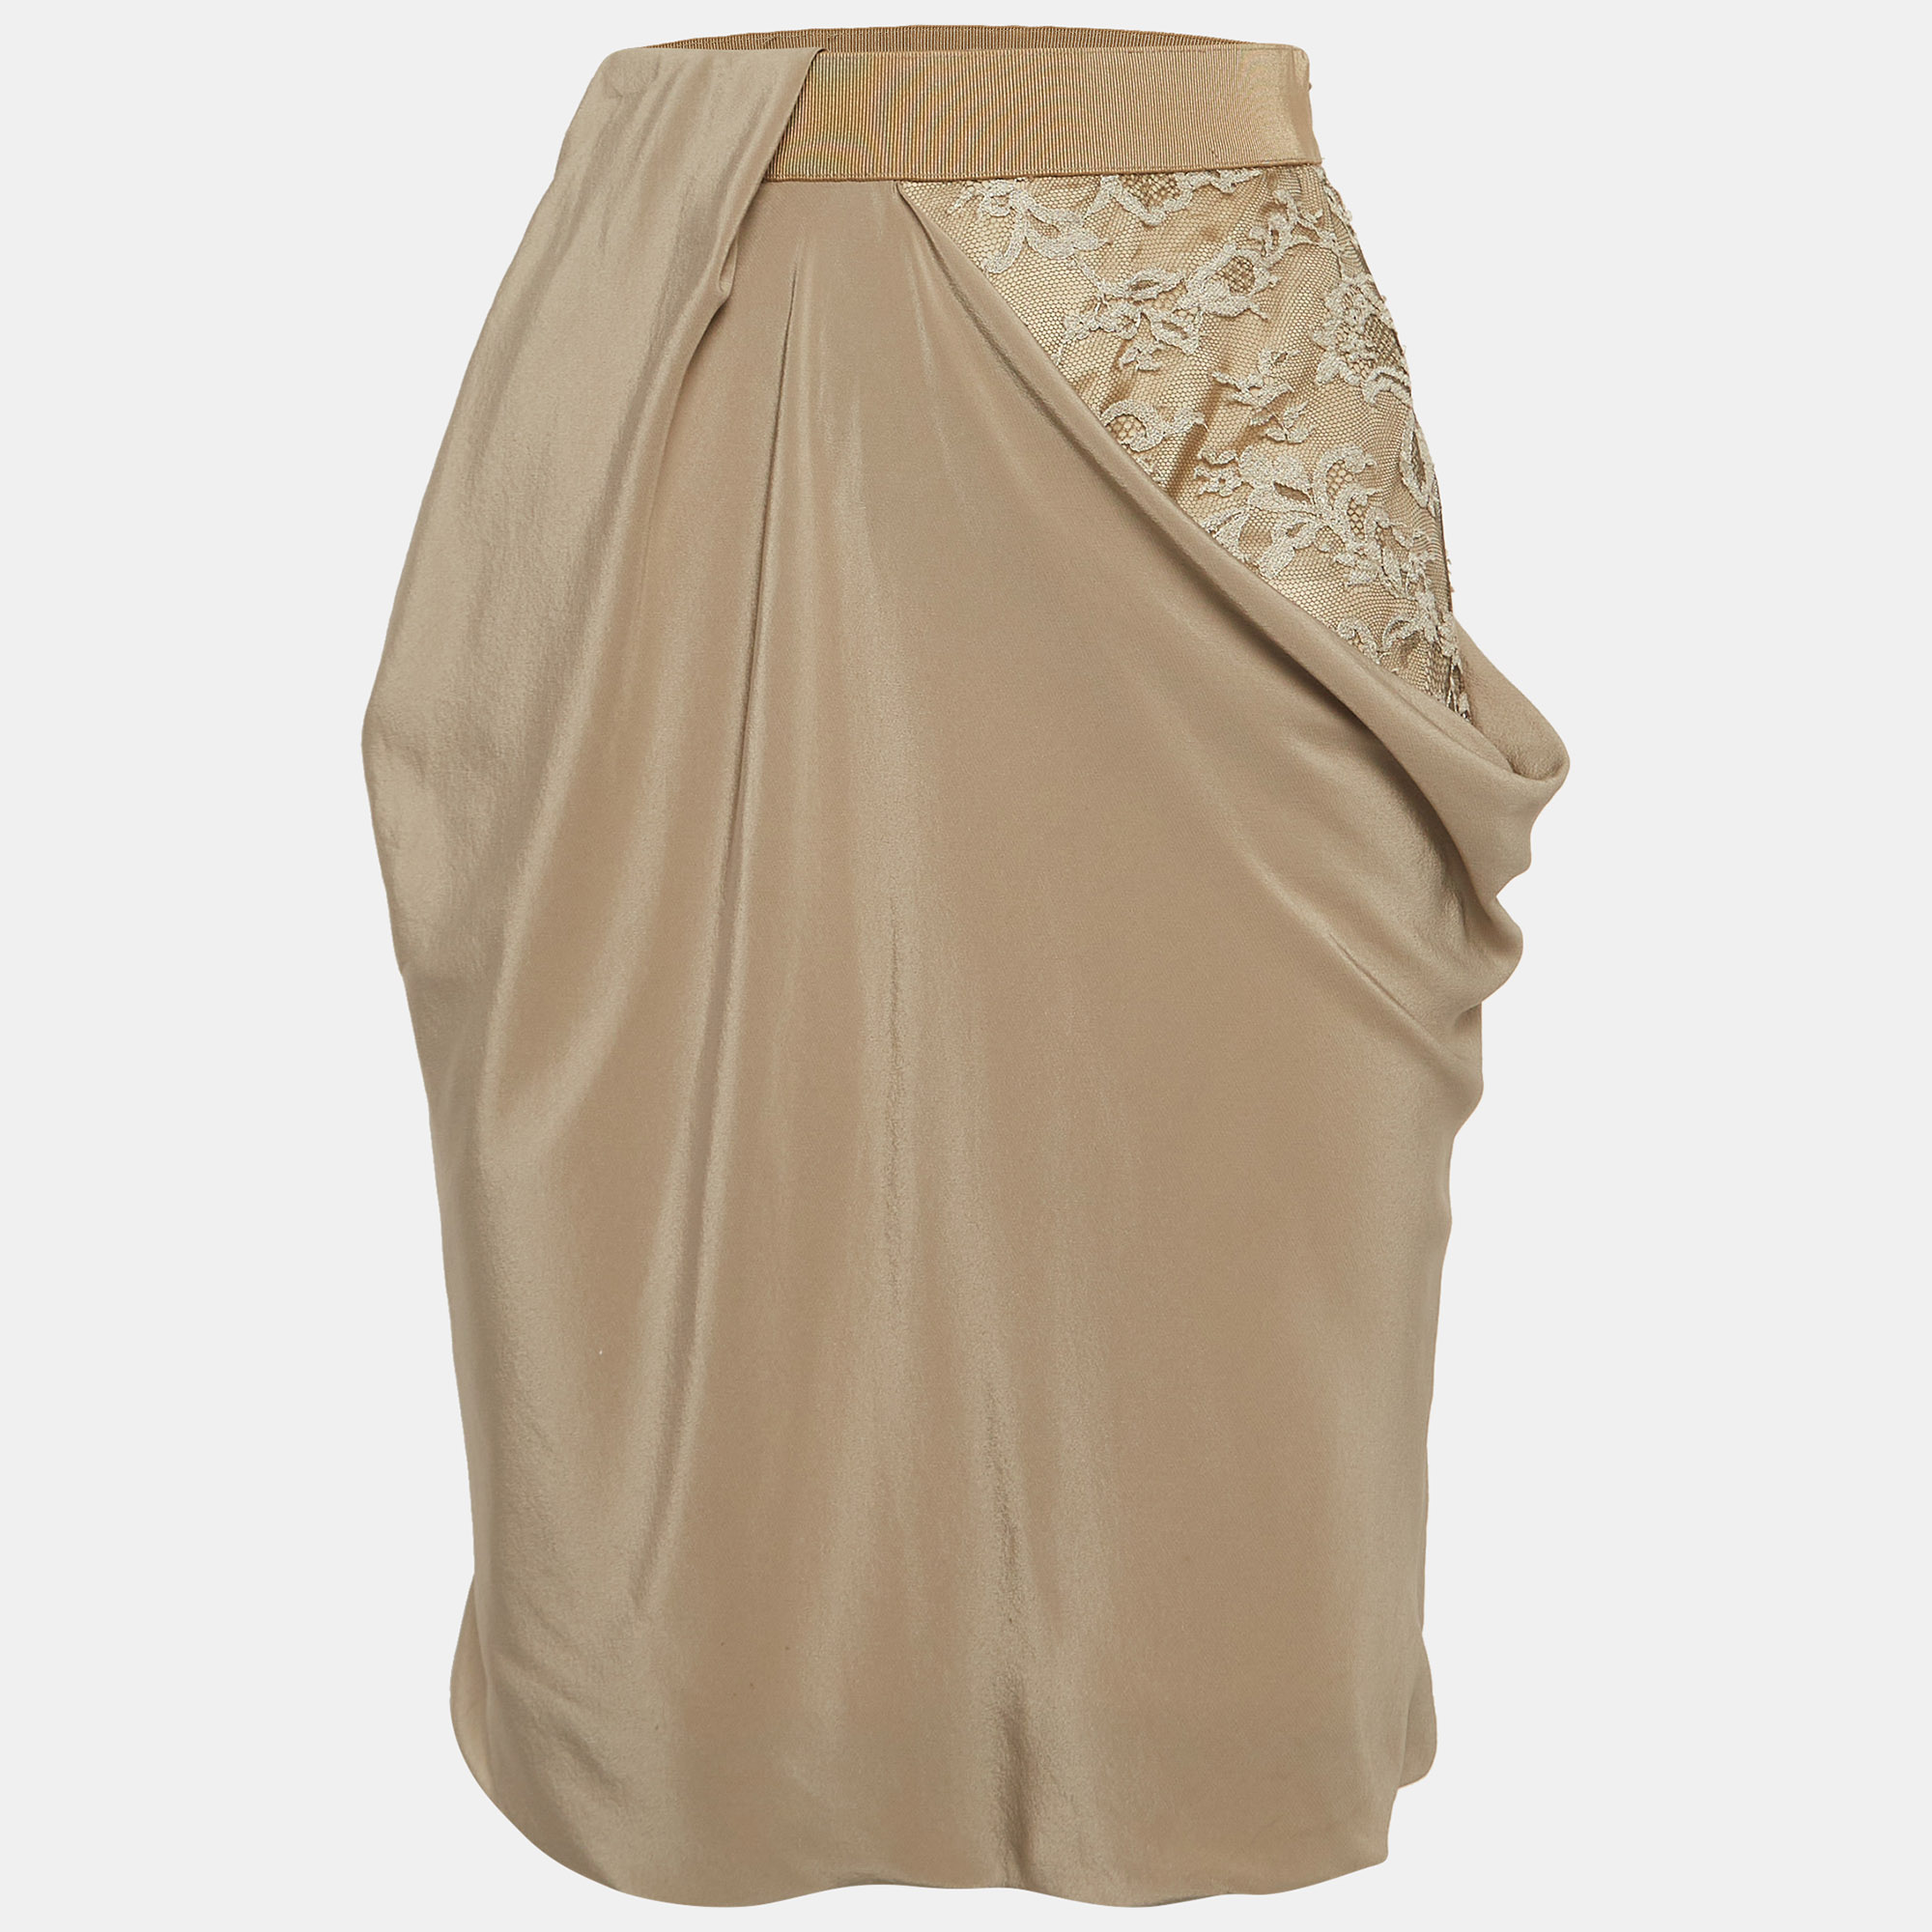 Sportmax beige lace trim silk draped pencil skirt s